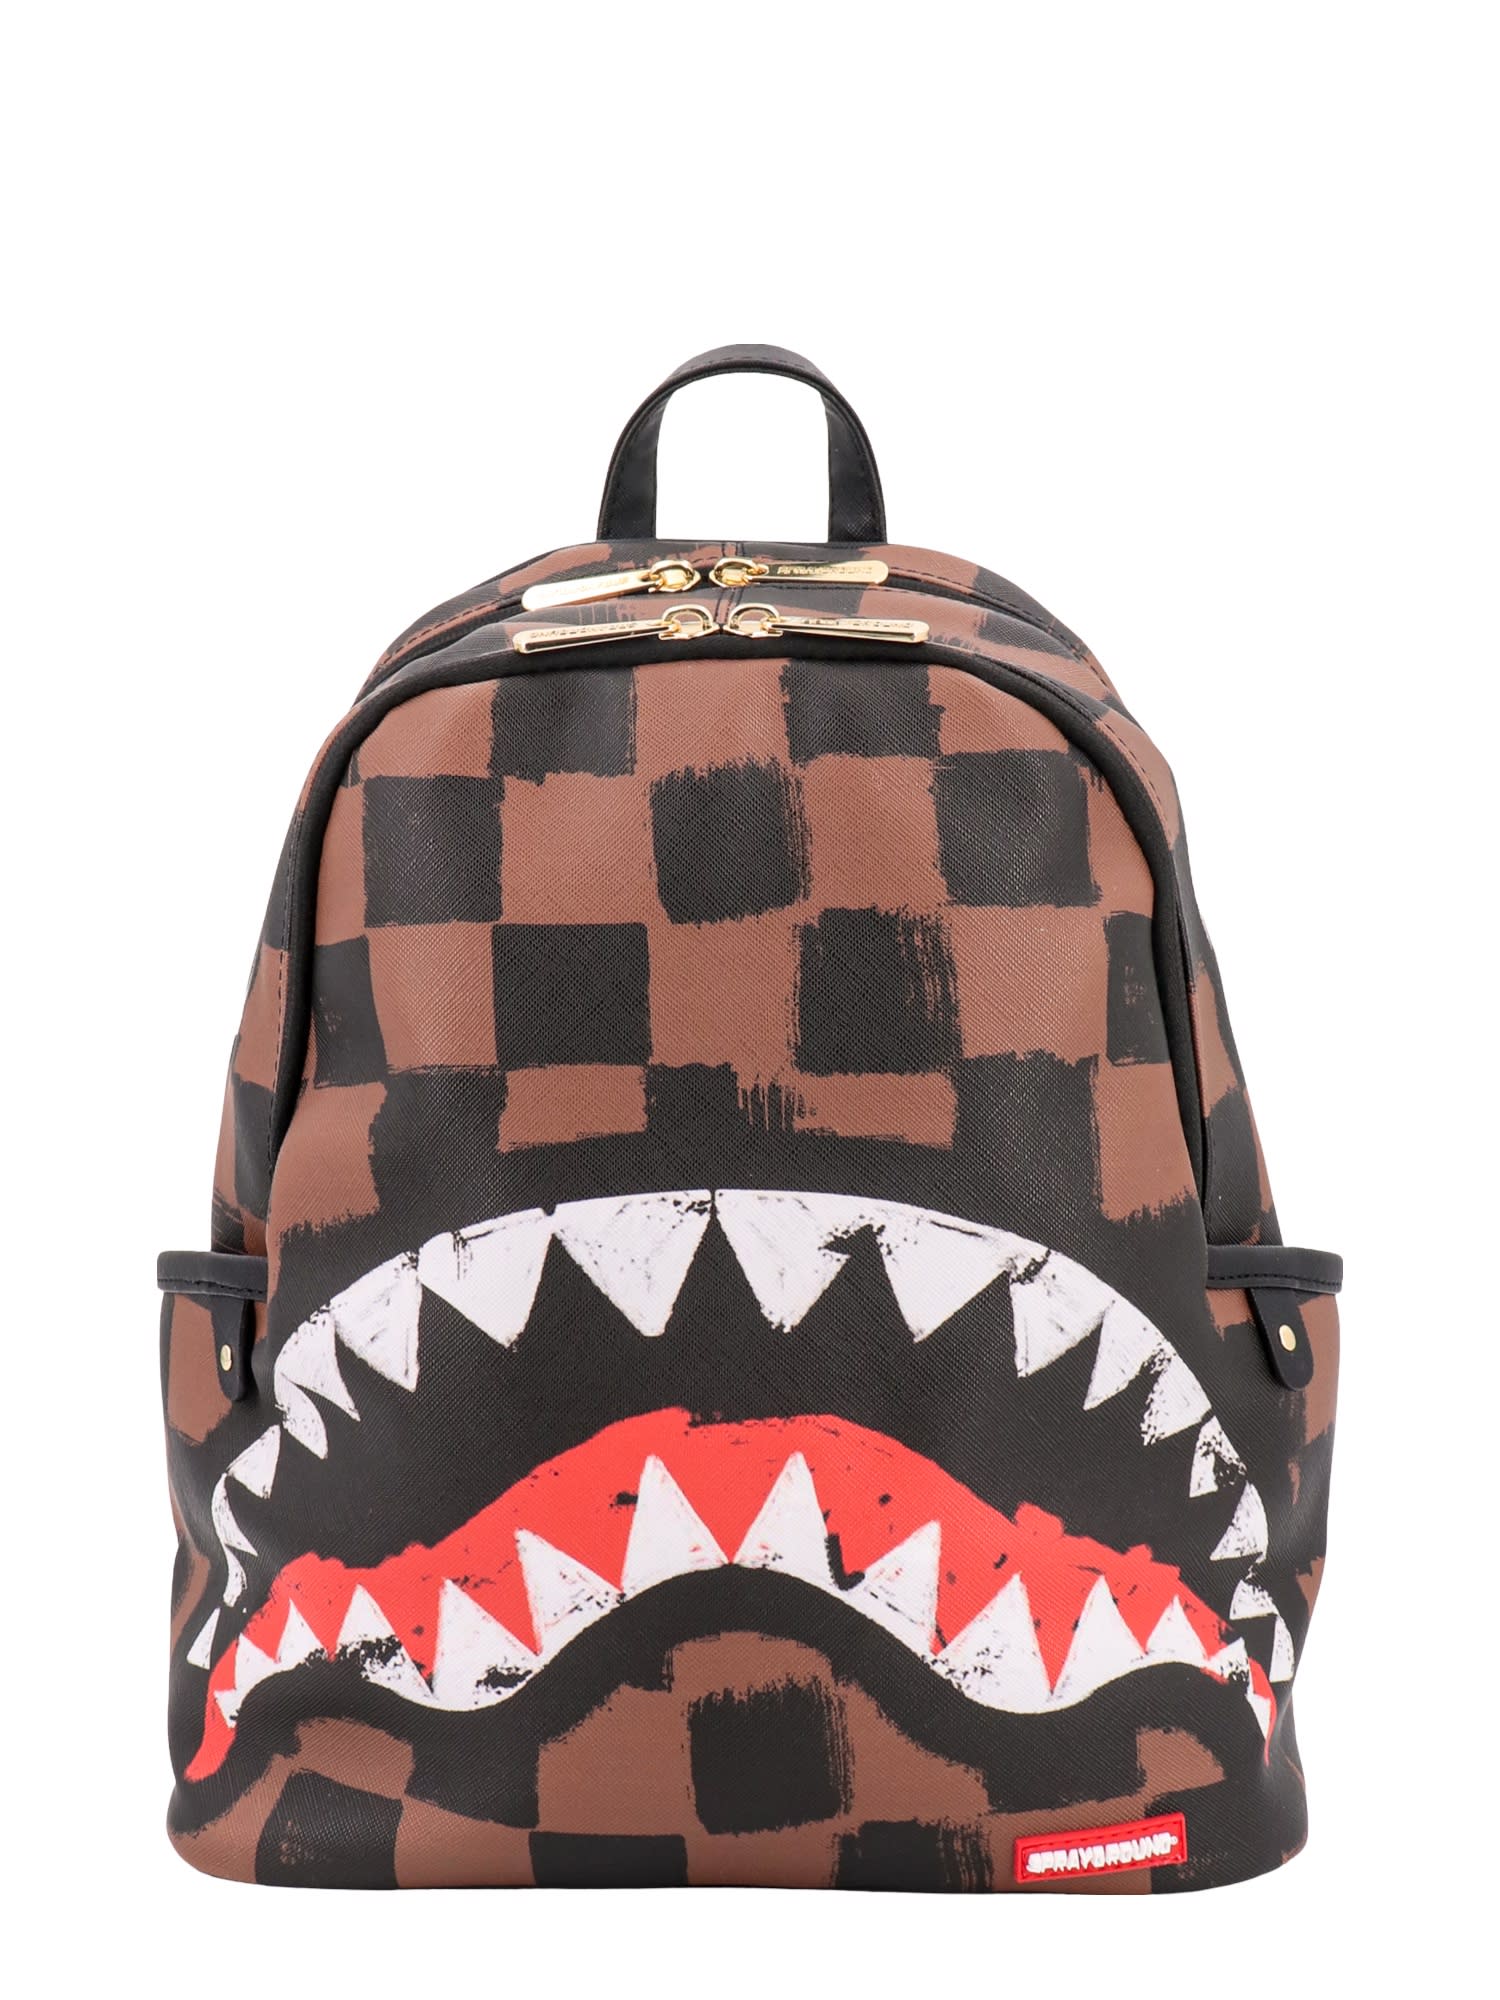 Backpacks Sprayground - Brown Sleek Sharks In Paris backpack